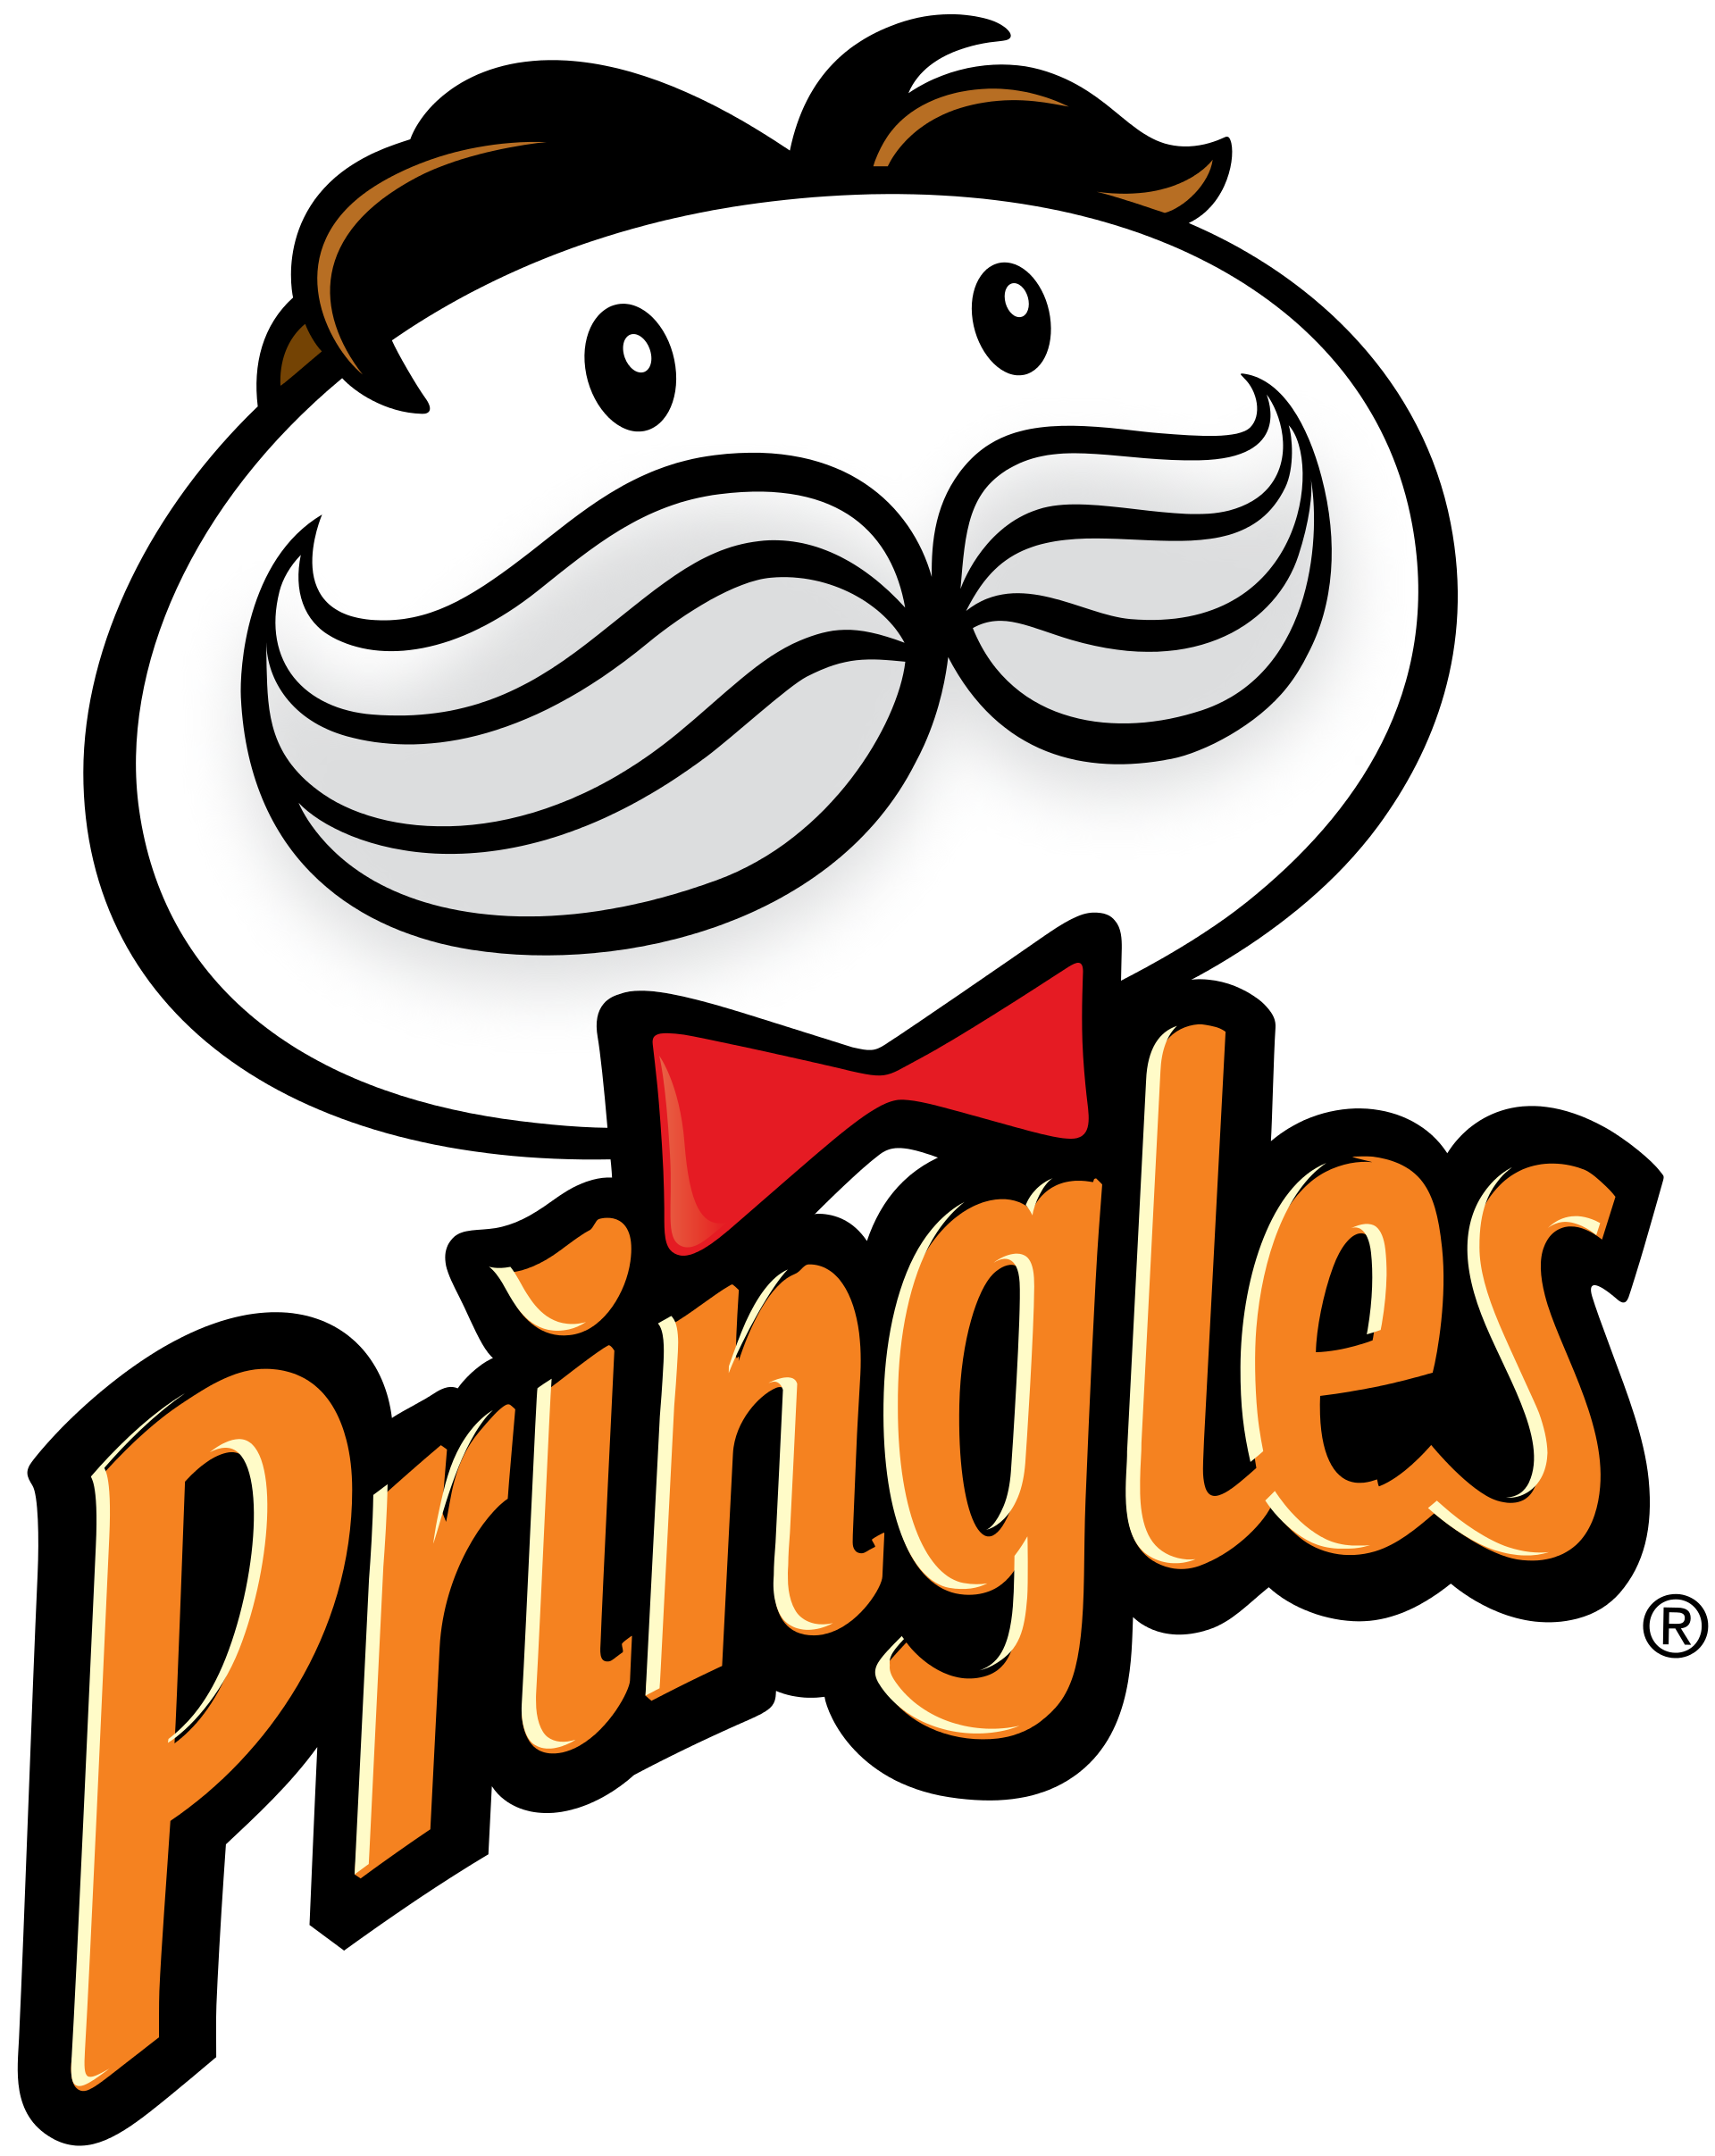 Pringles Logos